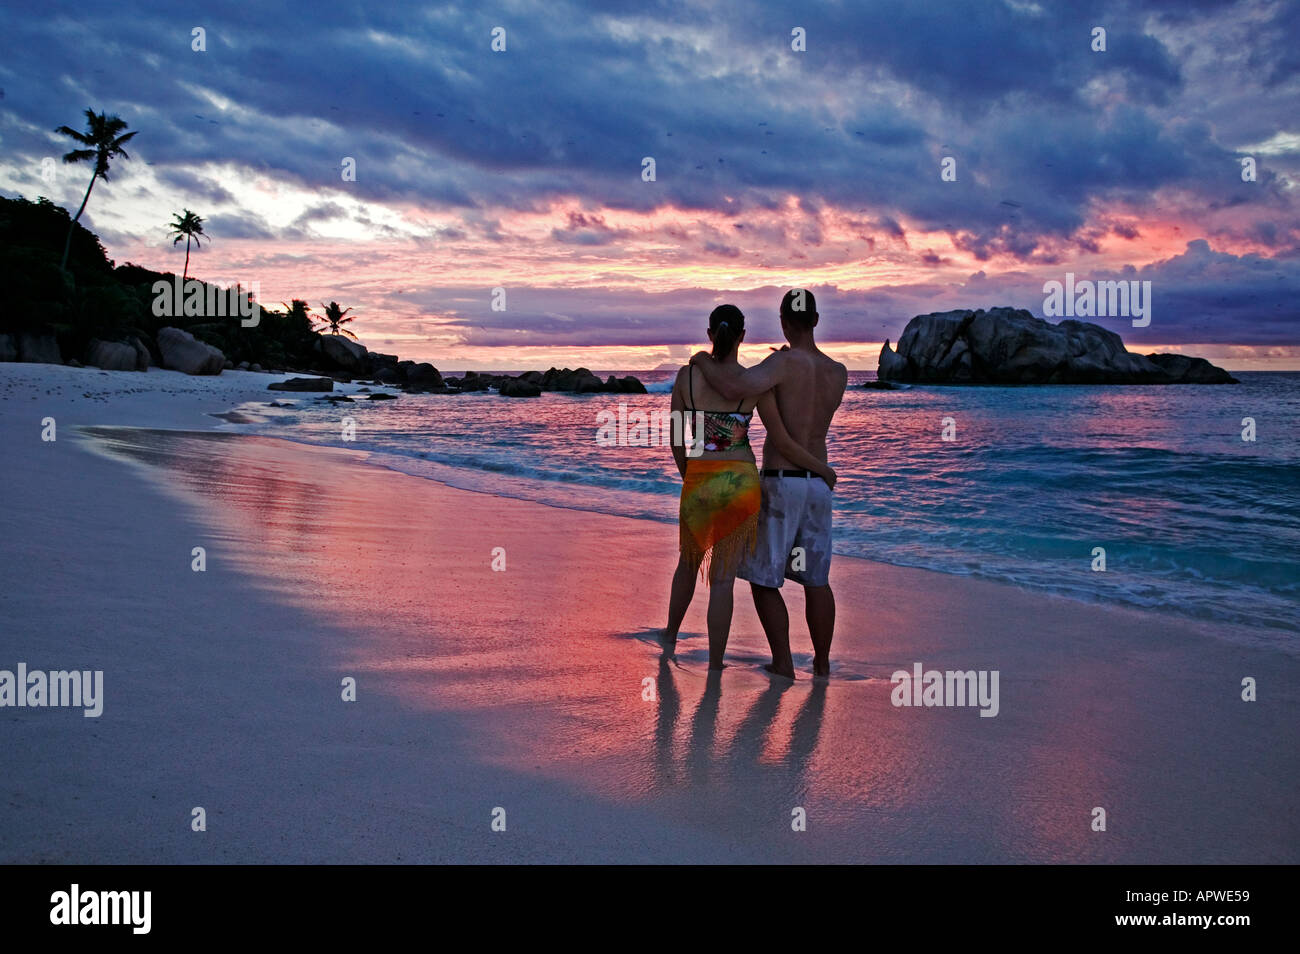 Les gens sur la plage au coucher du soleil parution Modèle Seychelles Cousine Island Banque D'Images